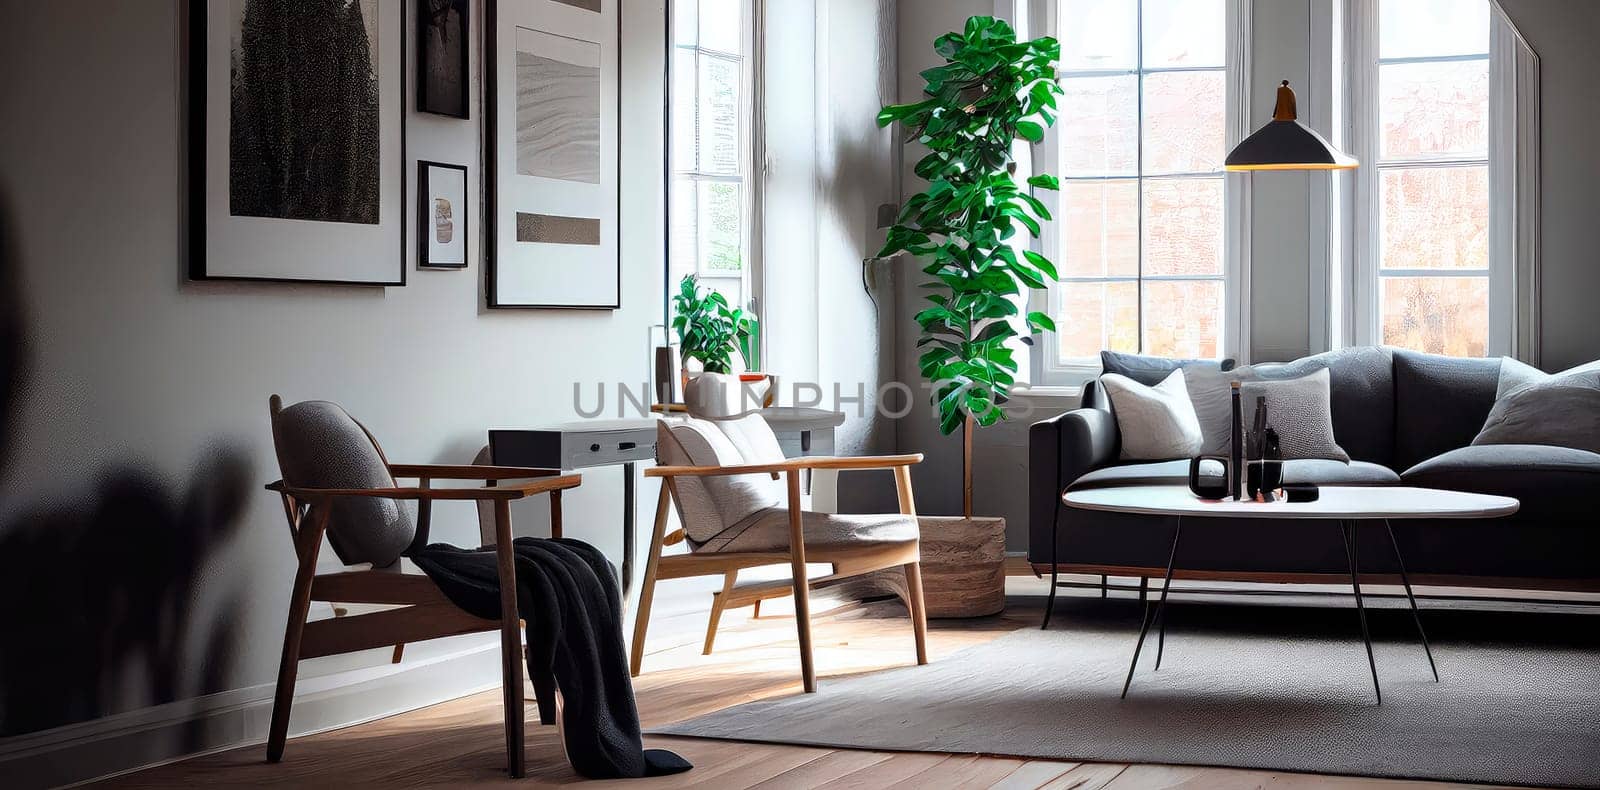 Living room in Scandinavian style. by yanadjana